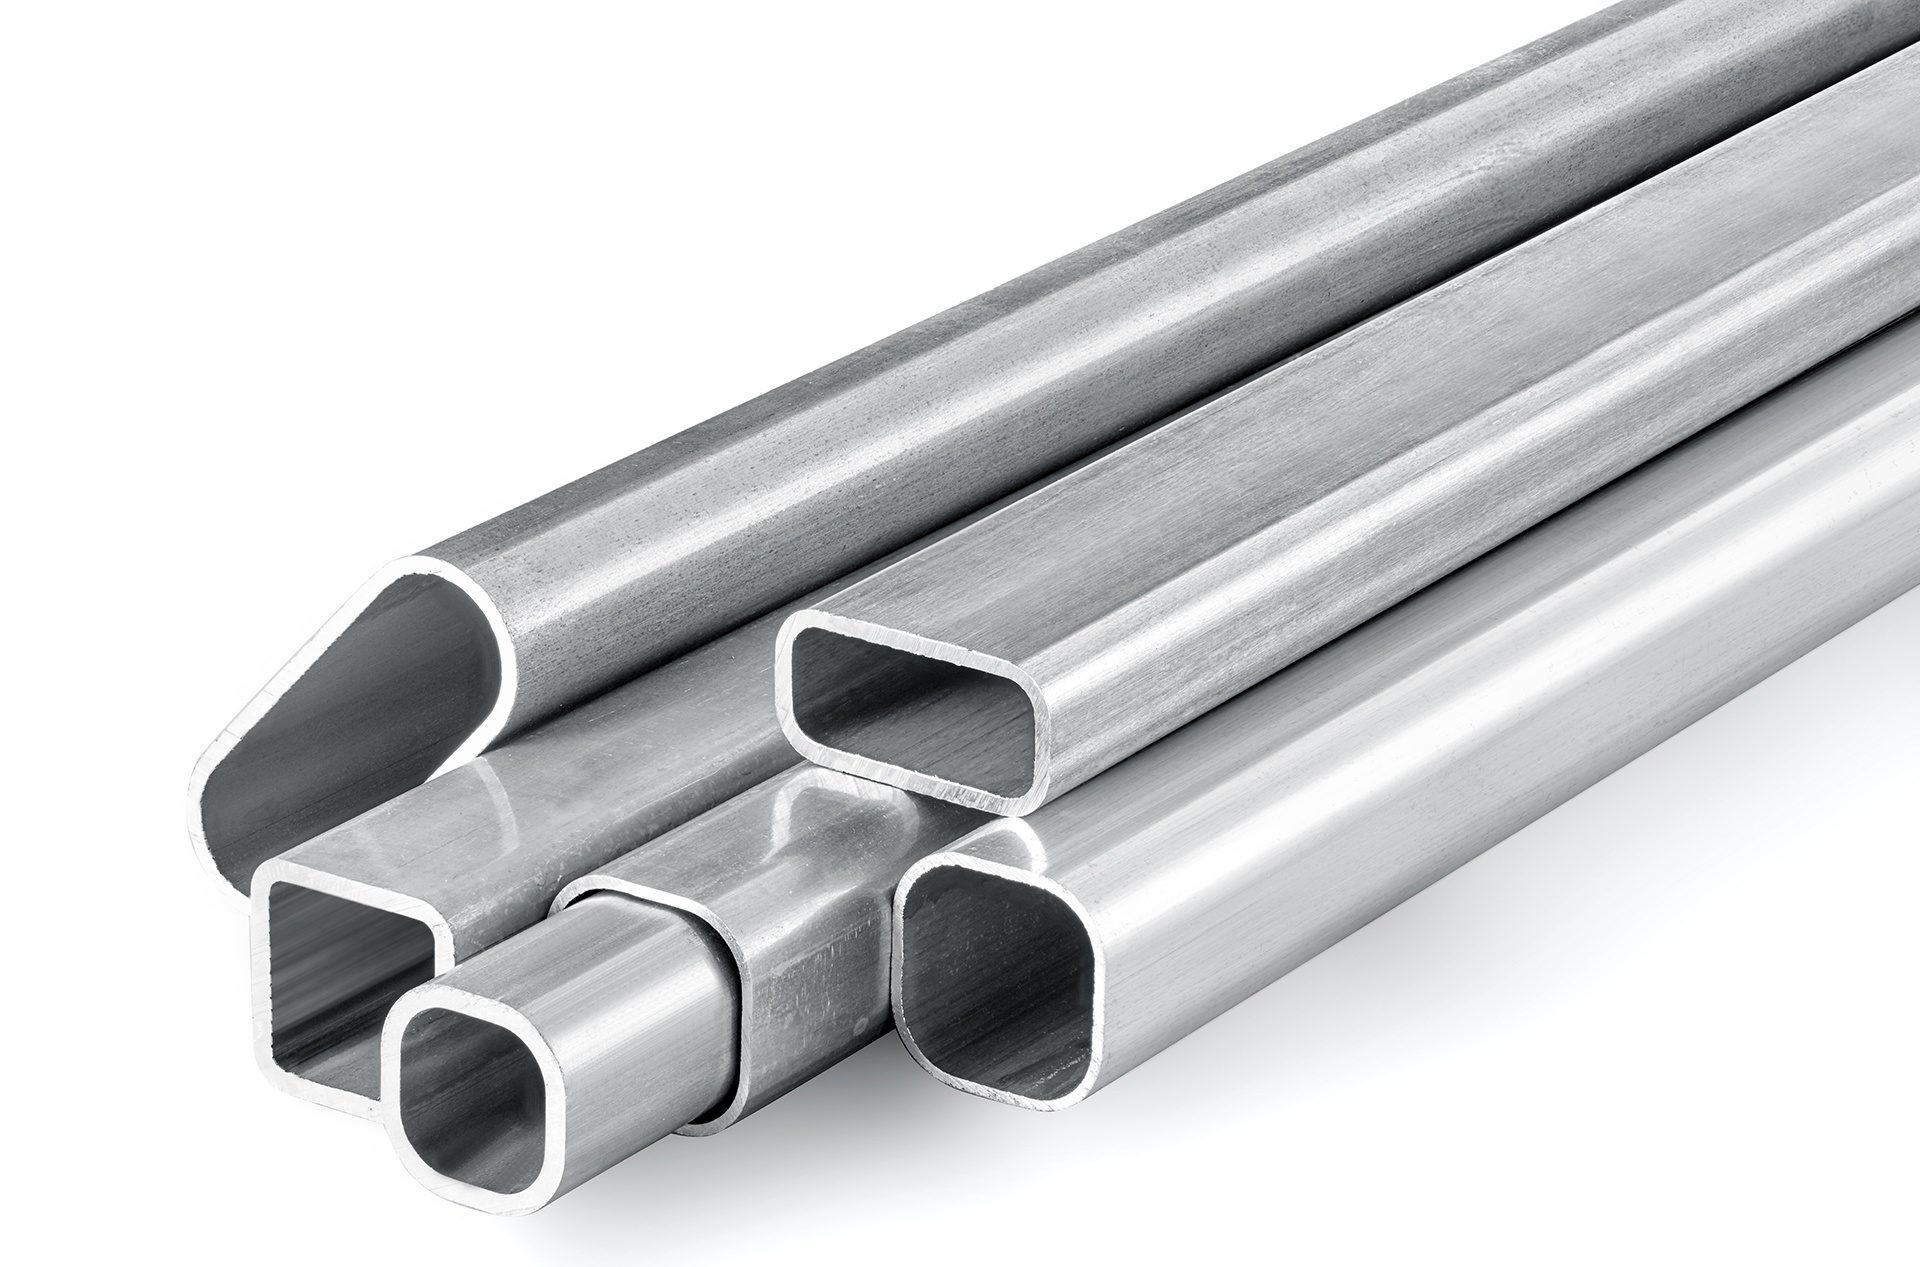 Aluminum 6061 6063 Square & Rectangular Aluminum Tubing